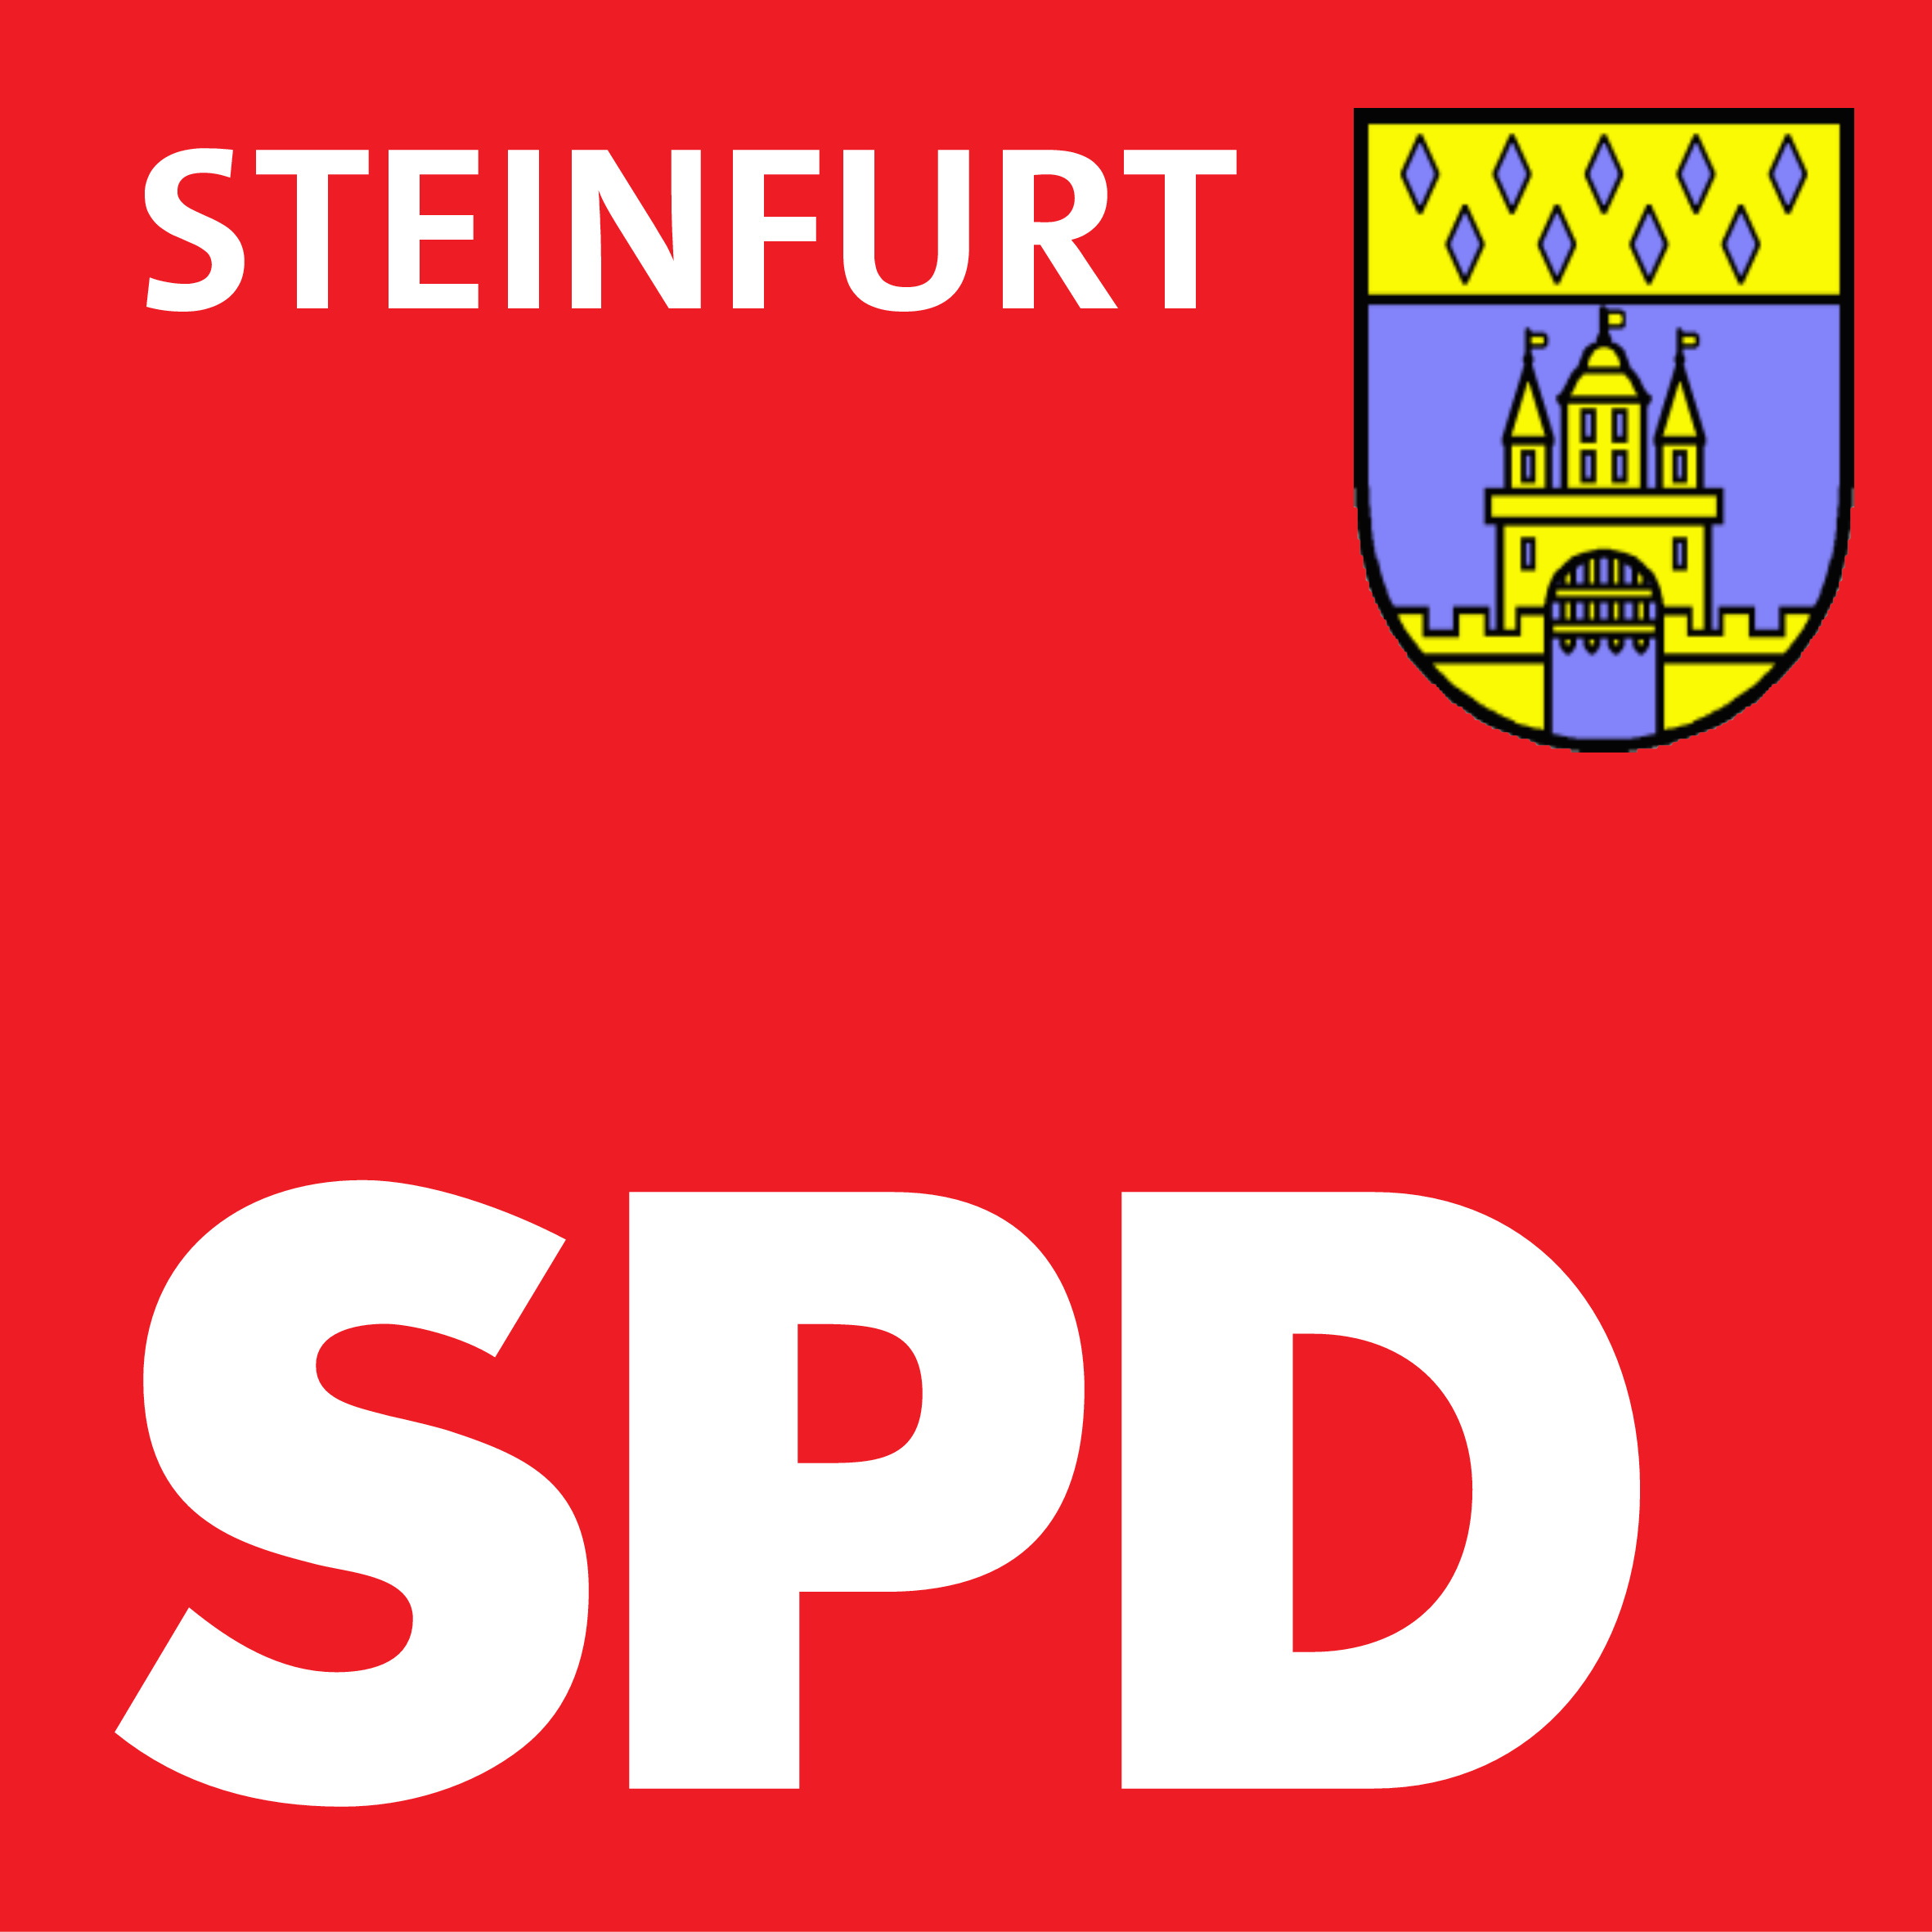 (c) Spd-steinfurt.de